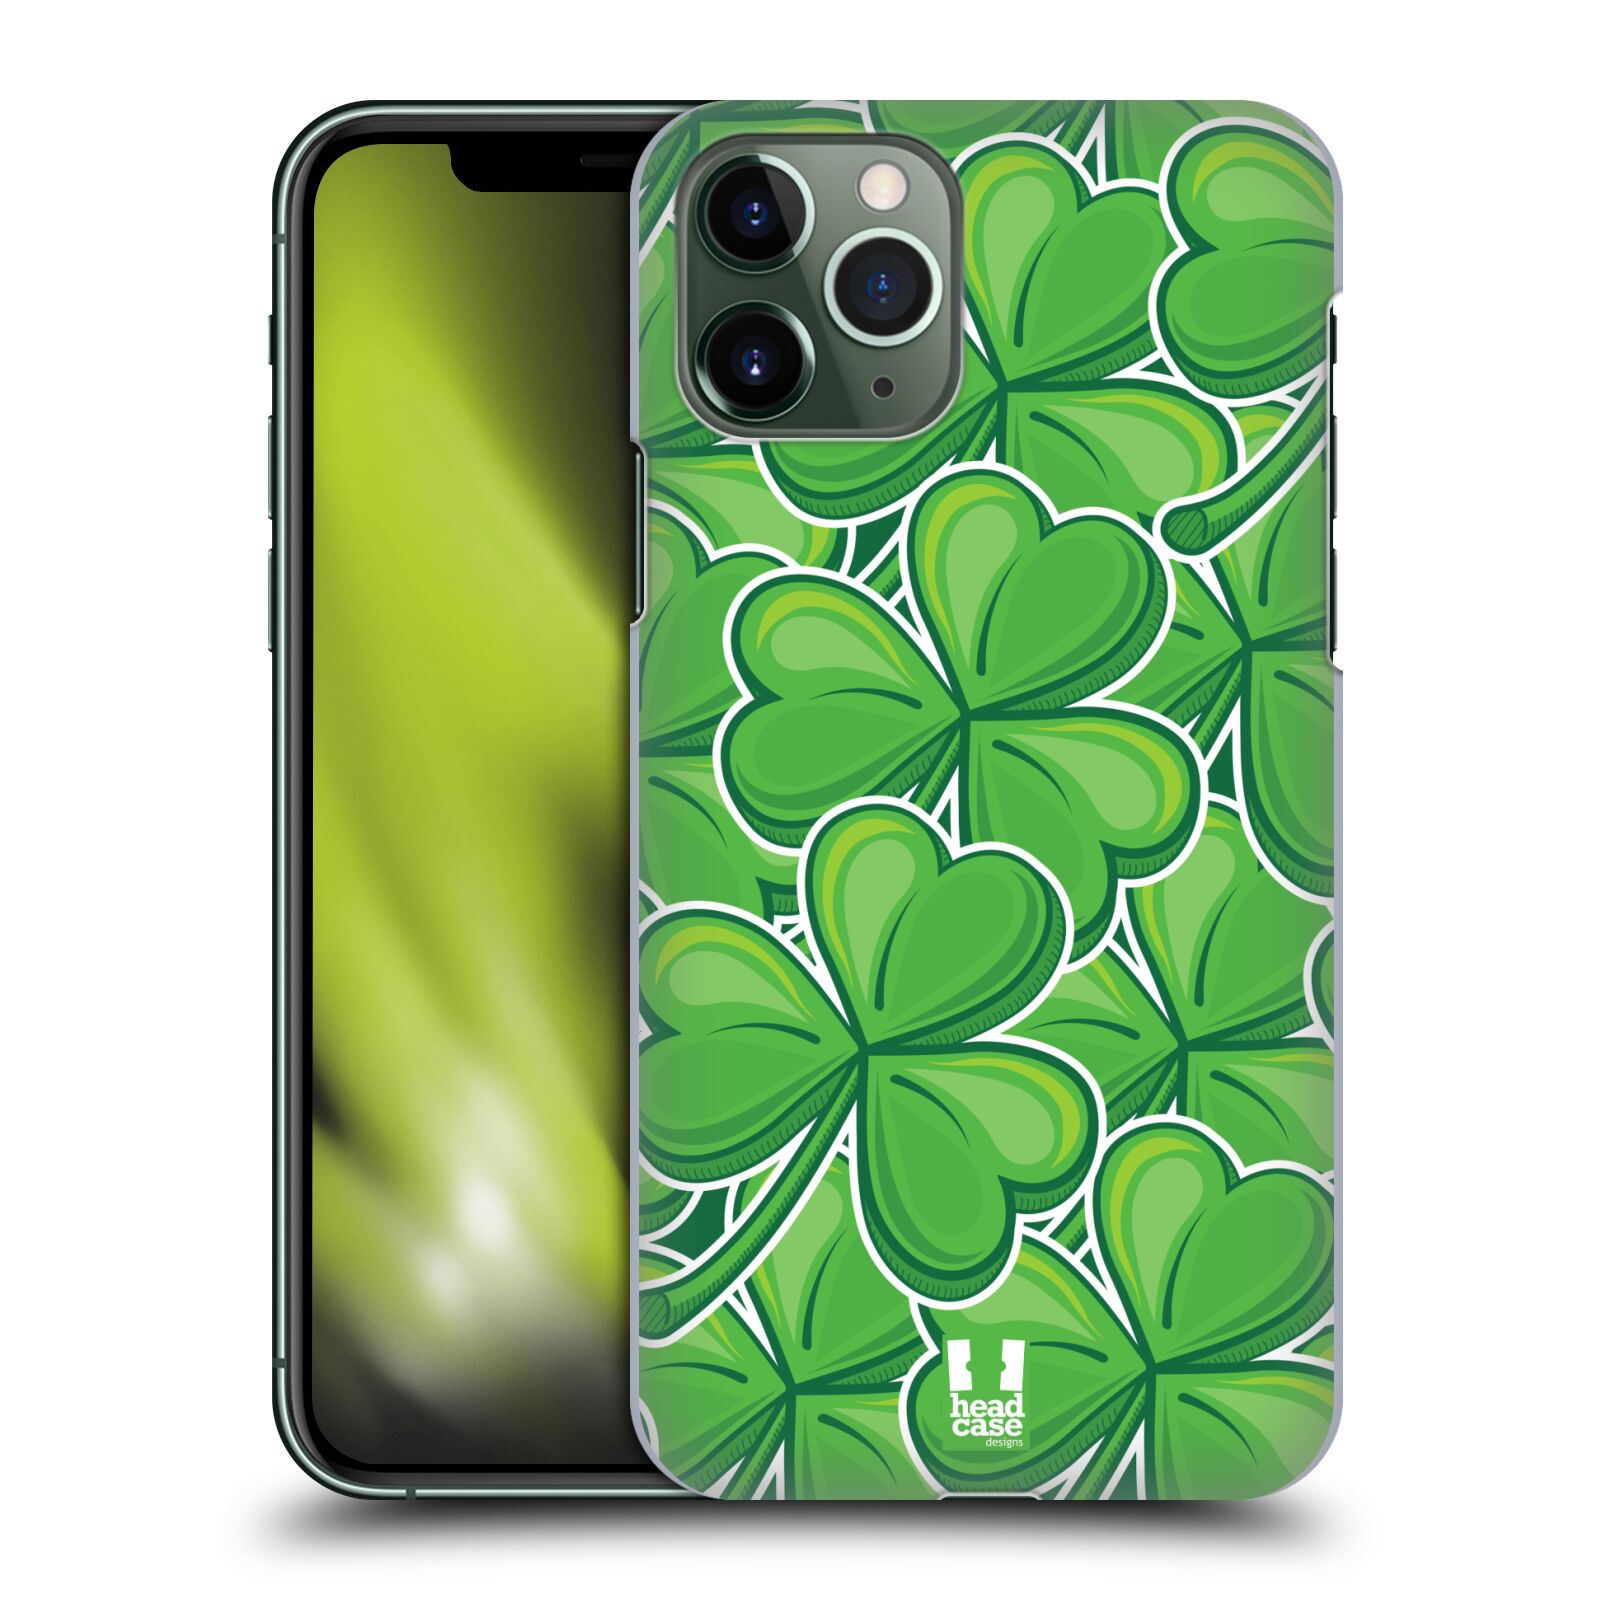 Pouzdro na mobil Apple Iphone 11 PRO - HEAD CASE - vzor Kreslený čyřlístek zelená VELKÉ LÍSTEČKY